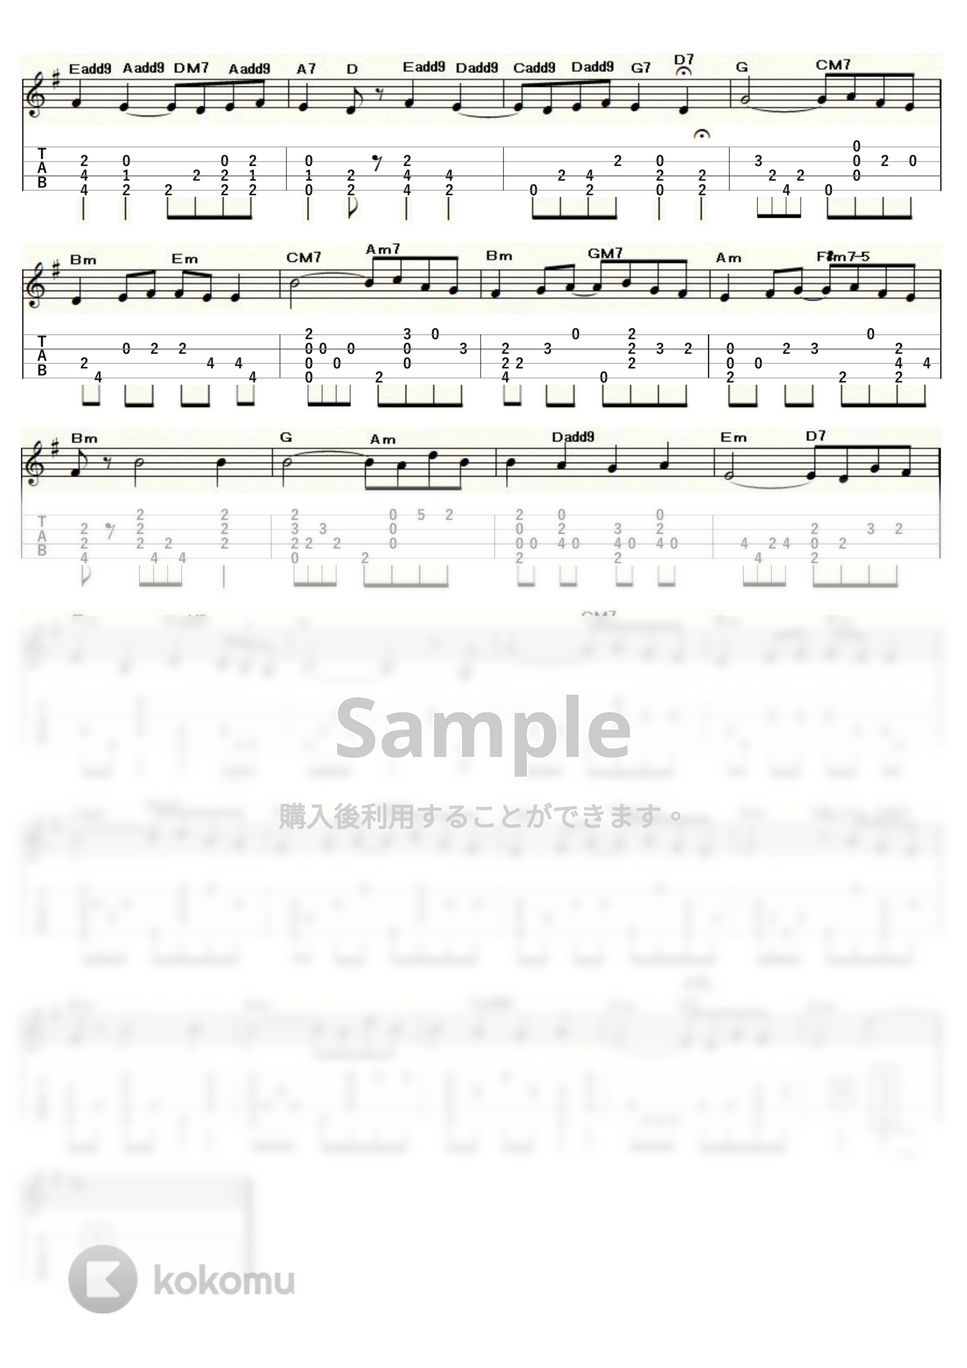 モーリス・ラヴェル - 亡き王女のためのパヴァーヌ (ｳｸﾚﾚｿﾛ / Low-G / 中級) by ukulelepapa